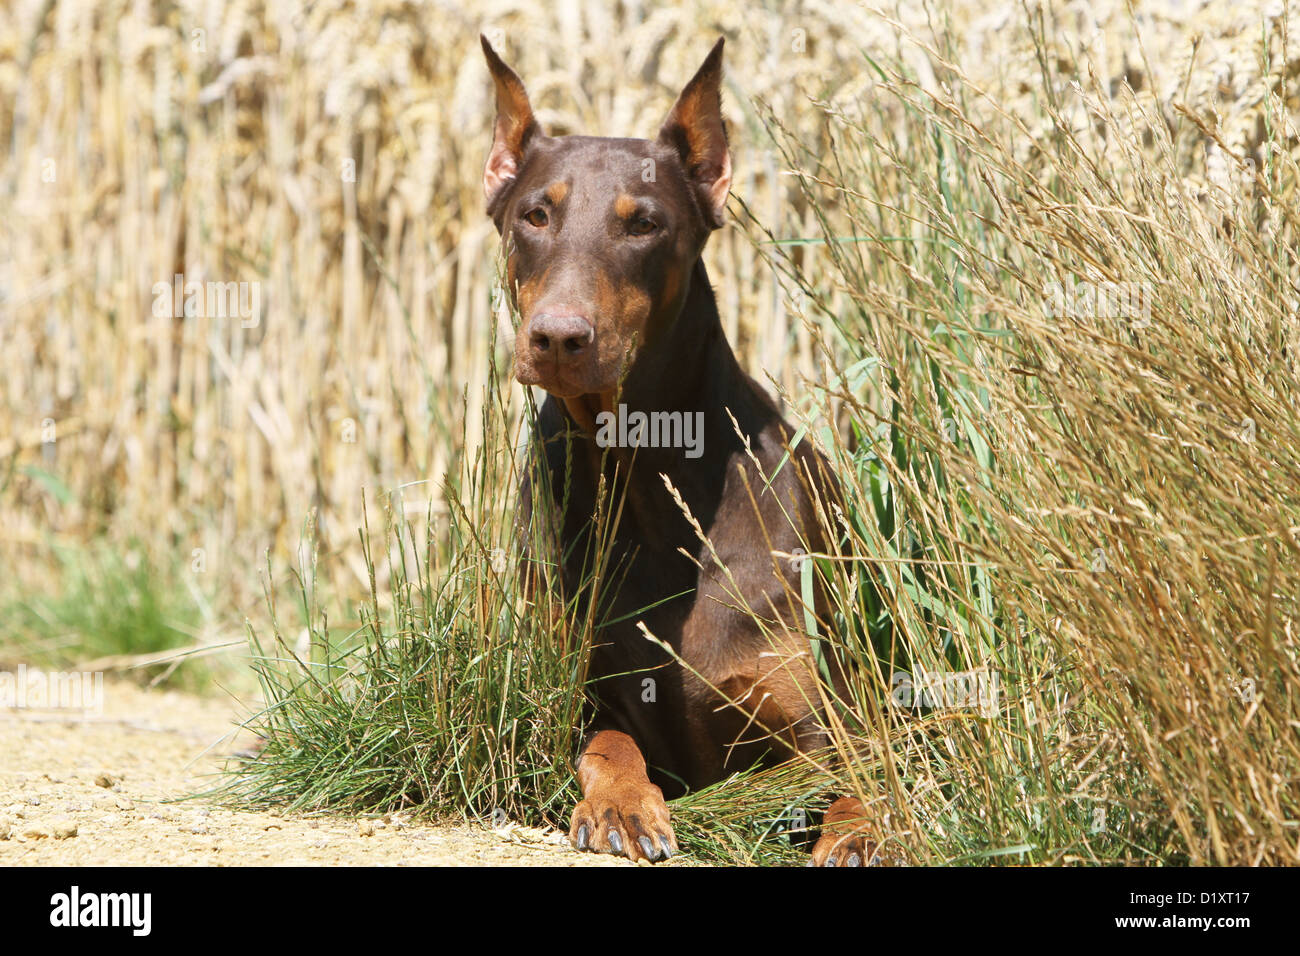 https://c8.alamy.com/comp/D1XT17/dog-dobermann-doberman-pinscher-cropped-ears-adult-lying-in-a-field-D1XT17.jpg